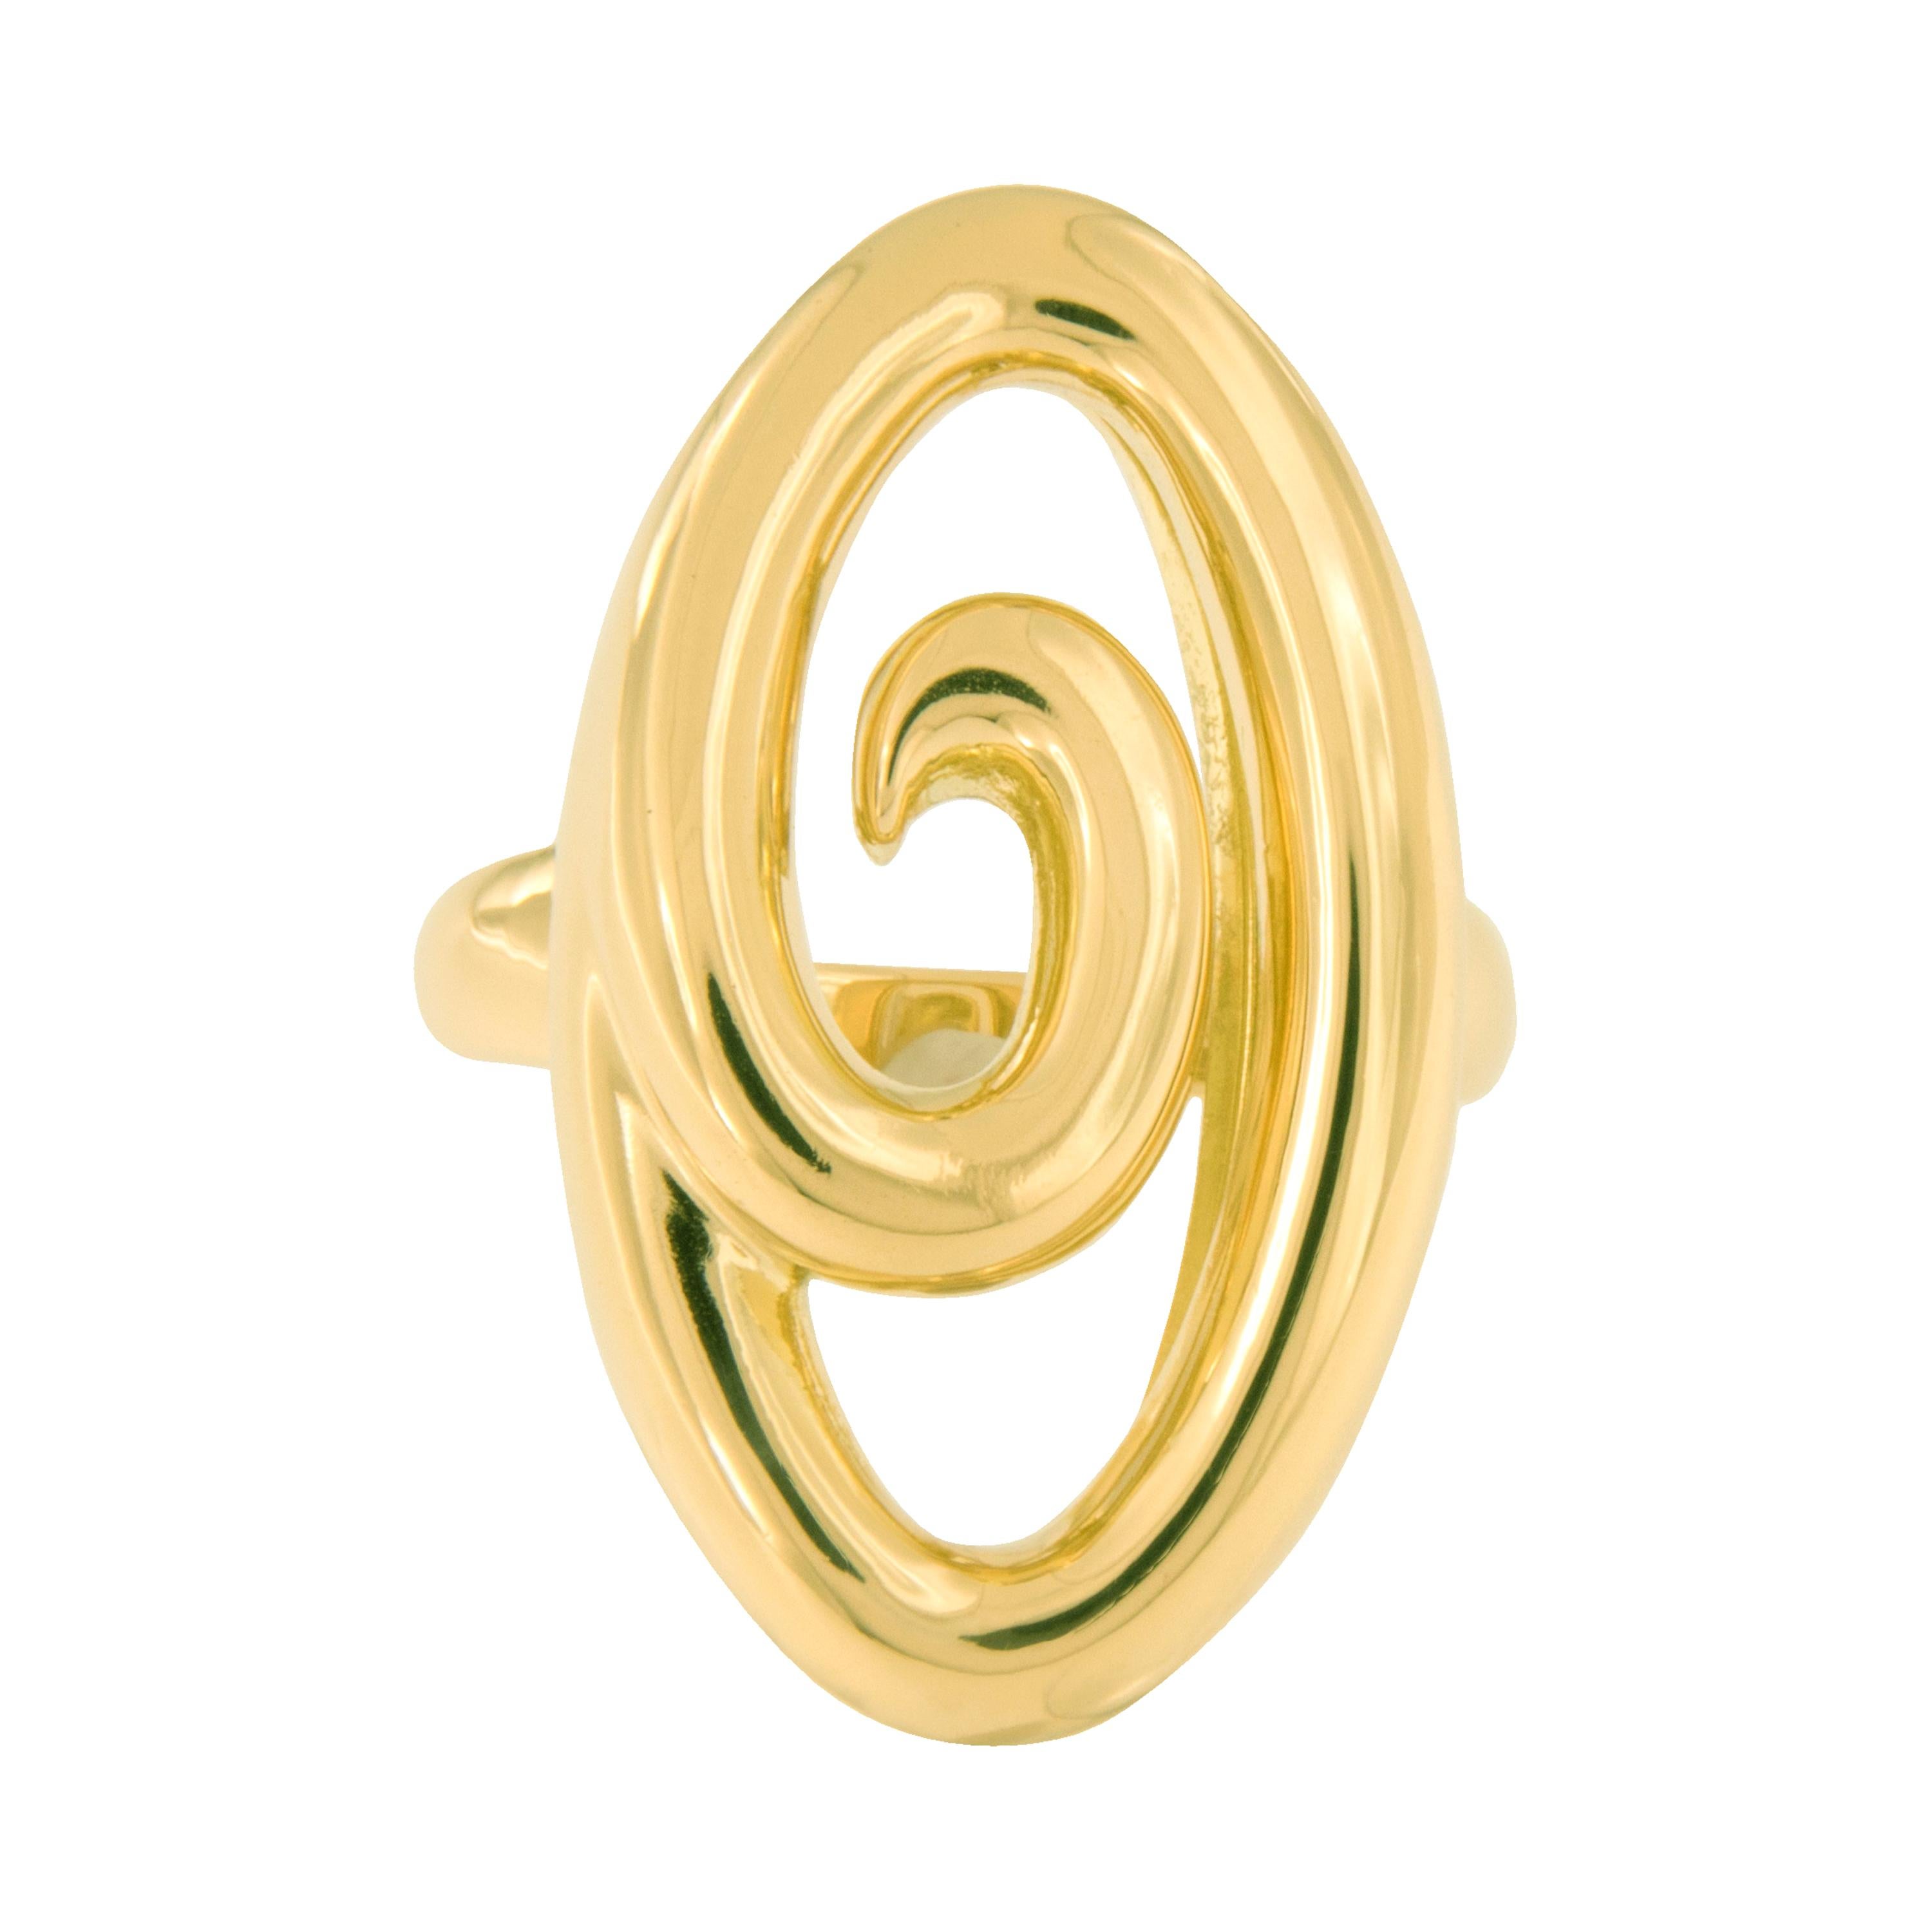 Jean Vitau Harmonie 18 Karat Gold Ring